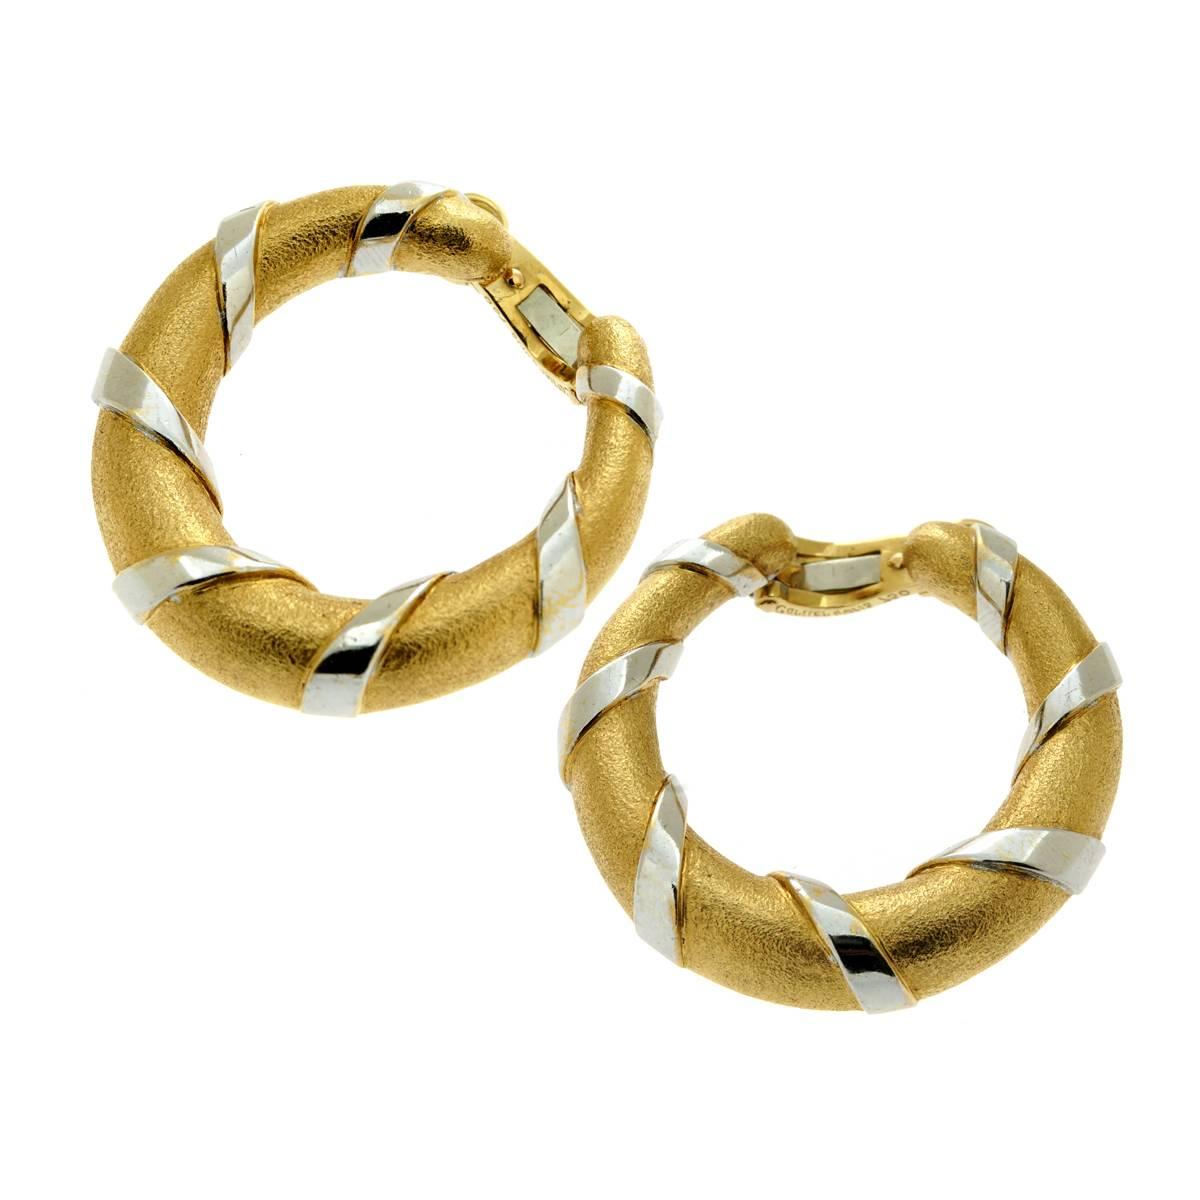 Une fabuleuse paire de boucles d'oreilles Cartier avec une finition texturée unique sur l'or jaune suivie de rubans lisses en or blanc 18 carats pour un contraste parfait.

Les boucles d'oreilles mesurent 1,22